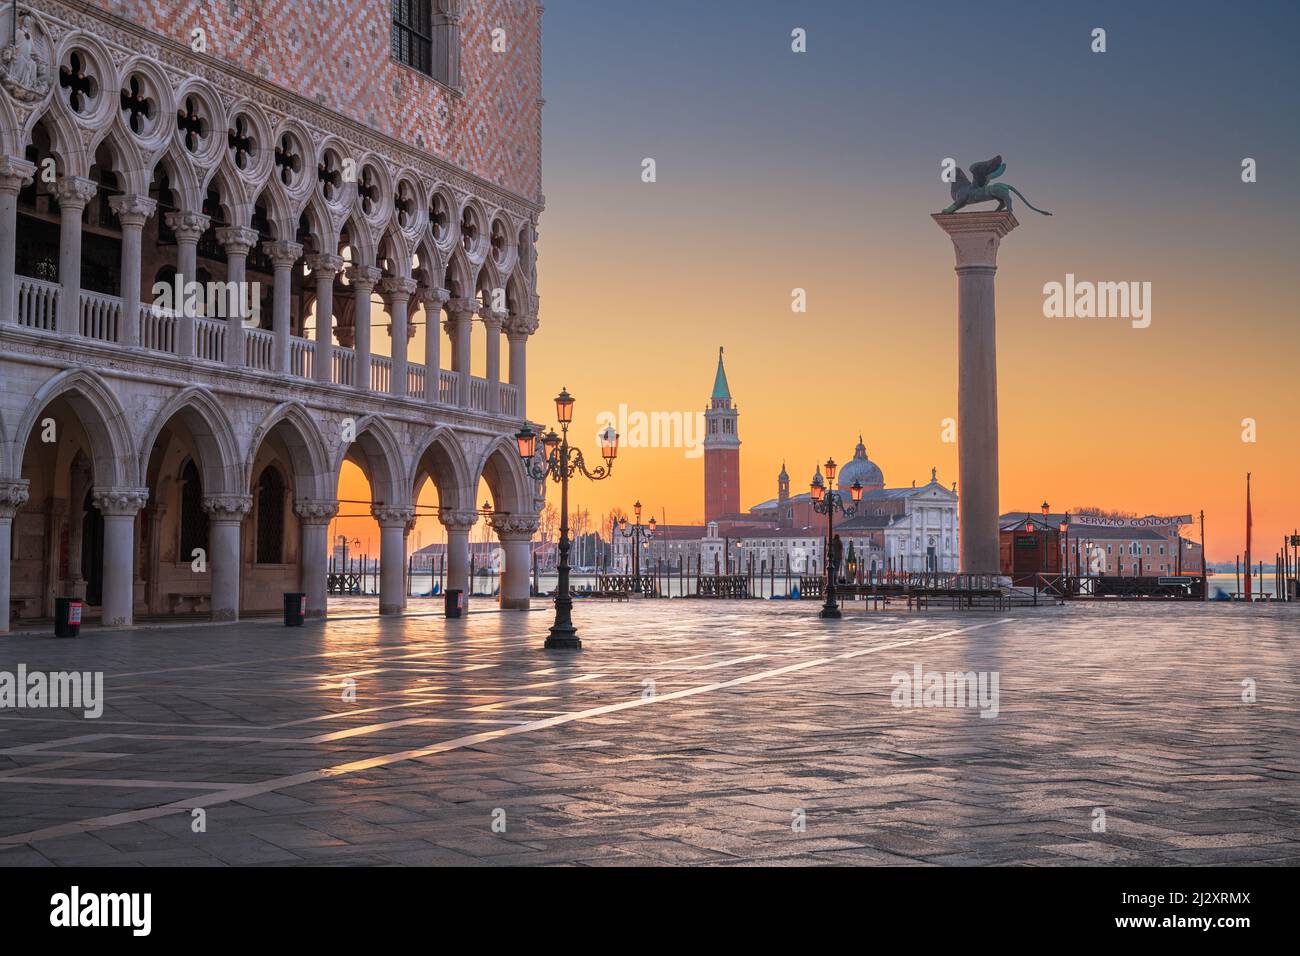 Venecia, Italia de Piazzetta di San Marco en la plaza de San Marcos por la mañana. (el texto dice: servicio de góndola) Foto de stock